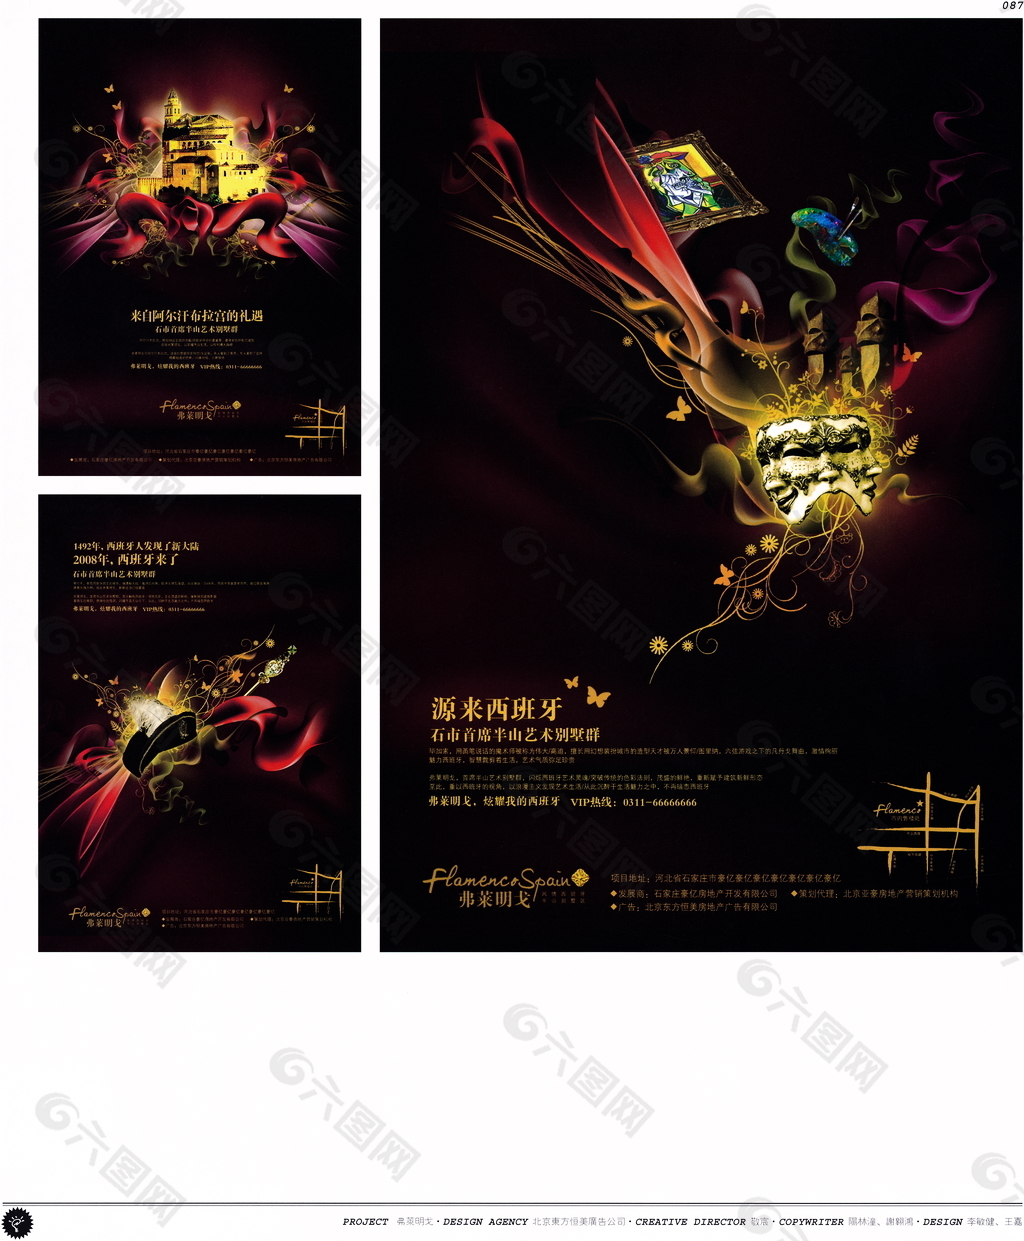 中国房地产广告年鉴 第一册 创意设计_0084